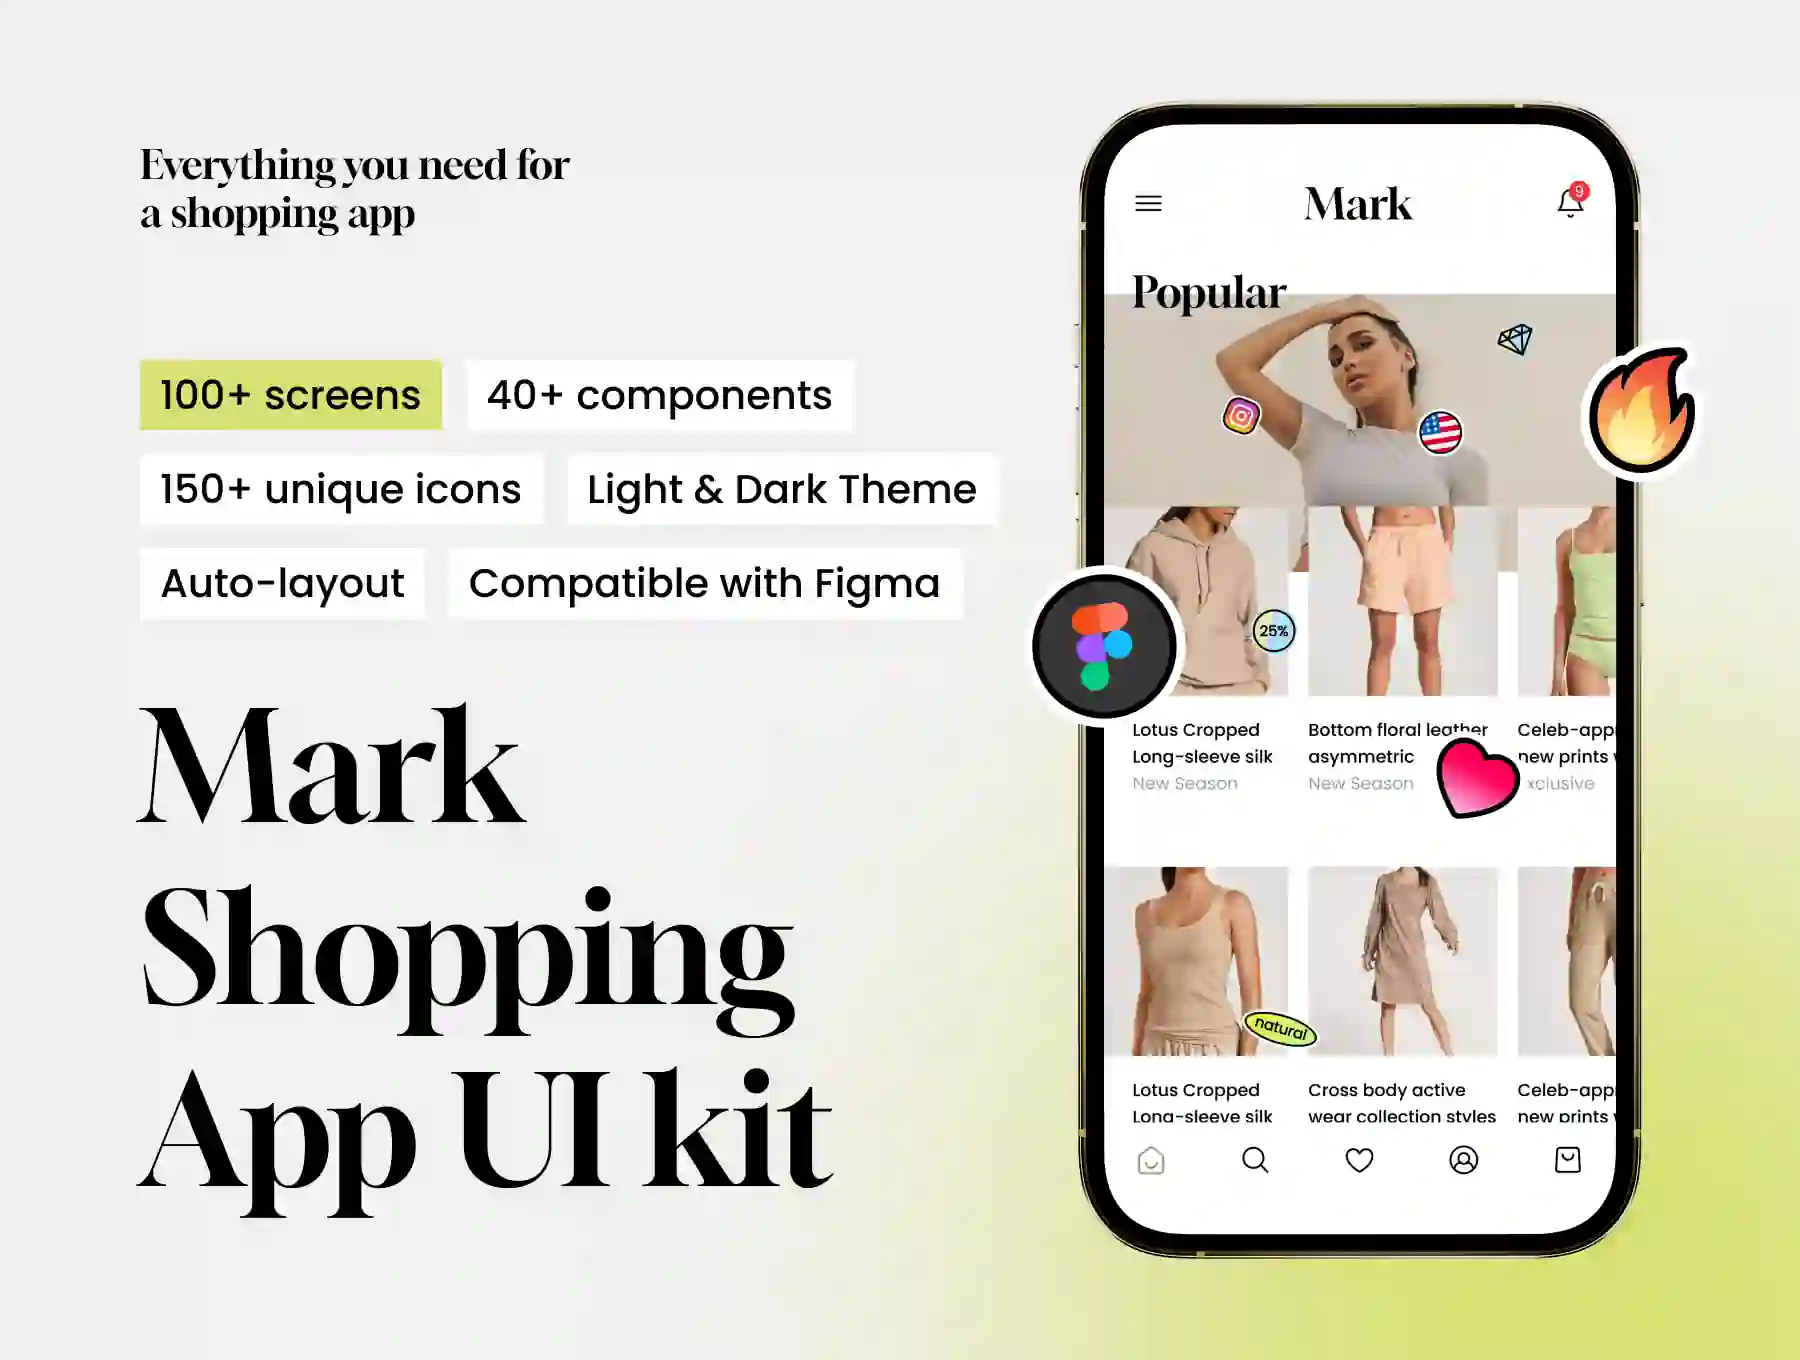 Mark Shopping App UI kit